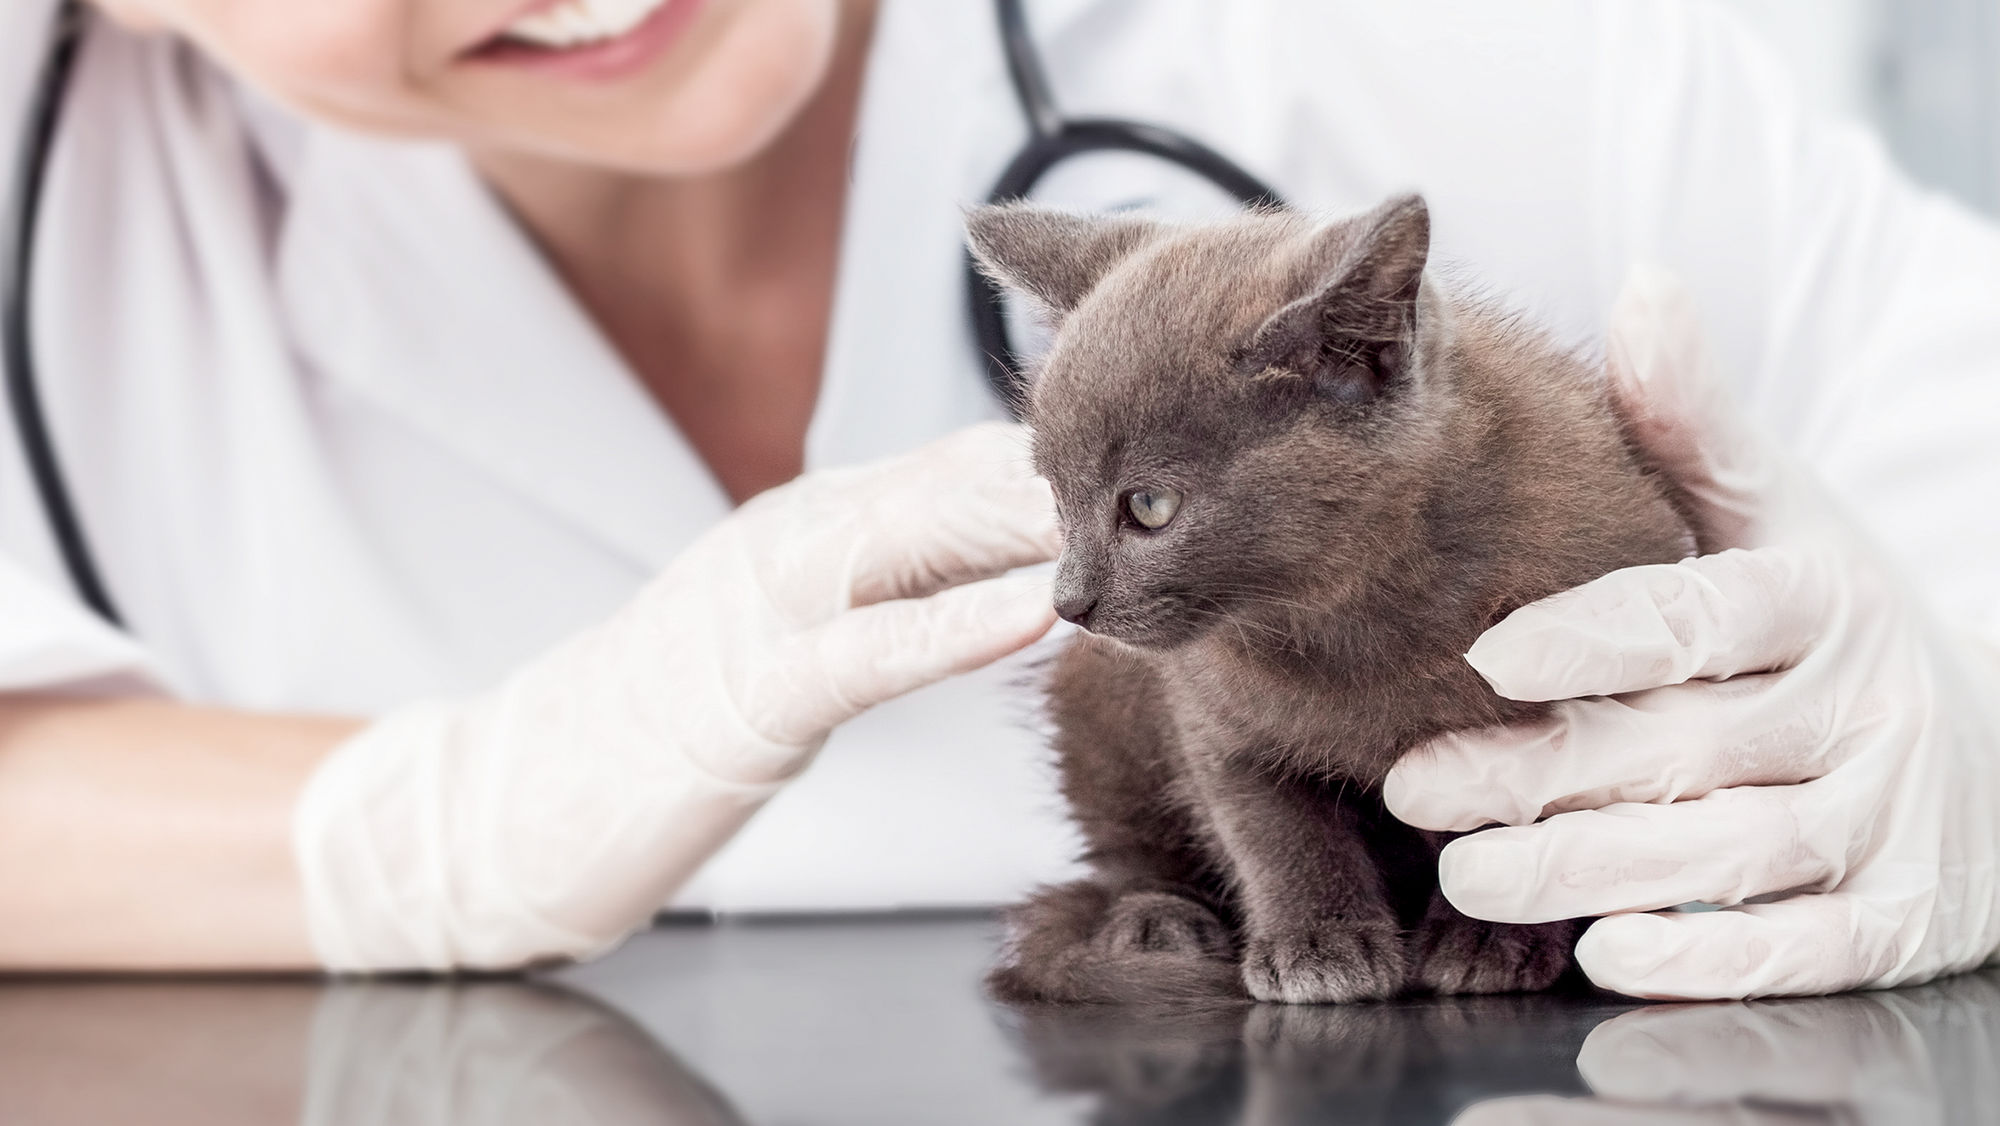 Jika Anda mengkhawatirkan kesehatan kucing Anda, konsultasikan dengan dokter hewan untuk mendapatkan saran profesional.